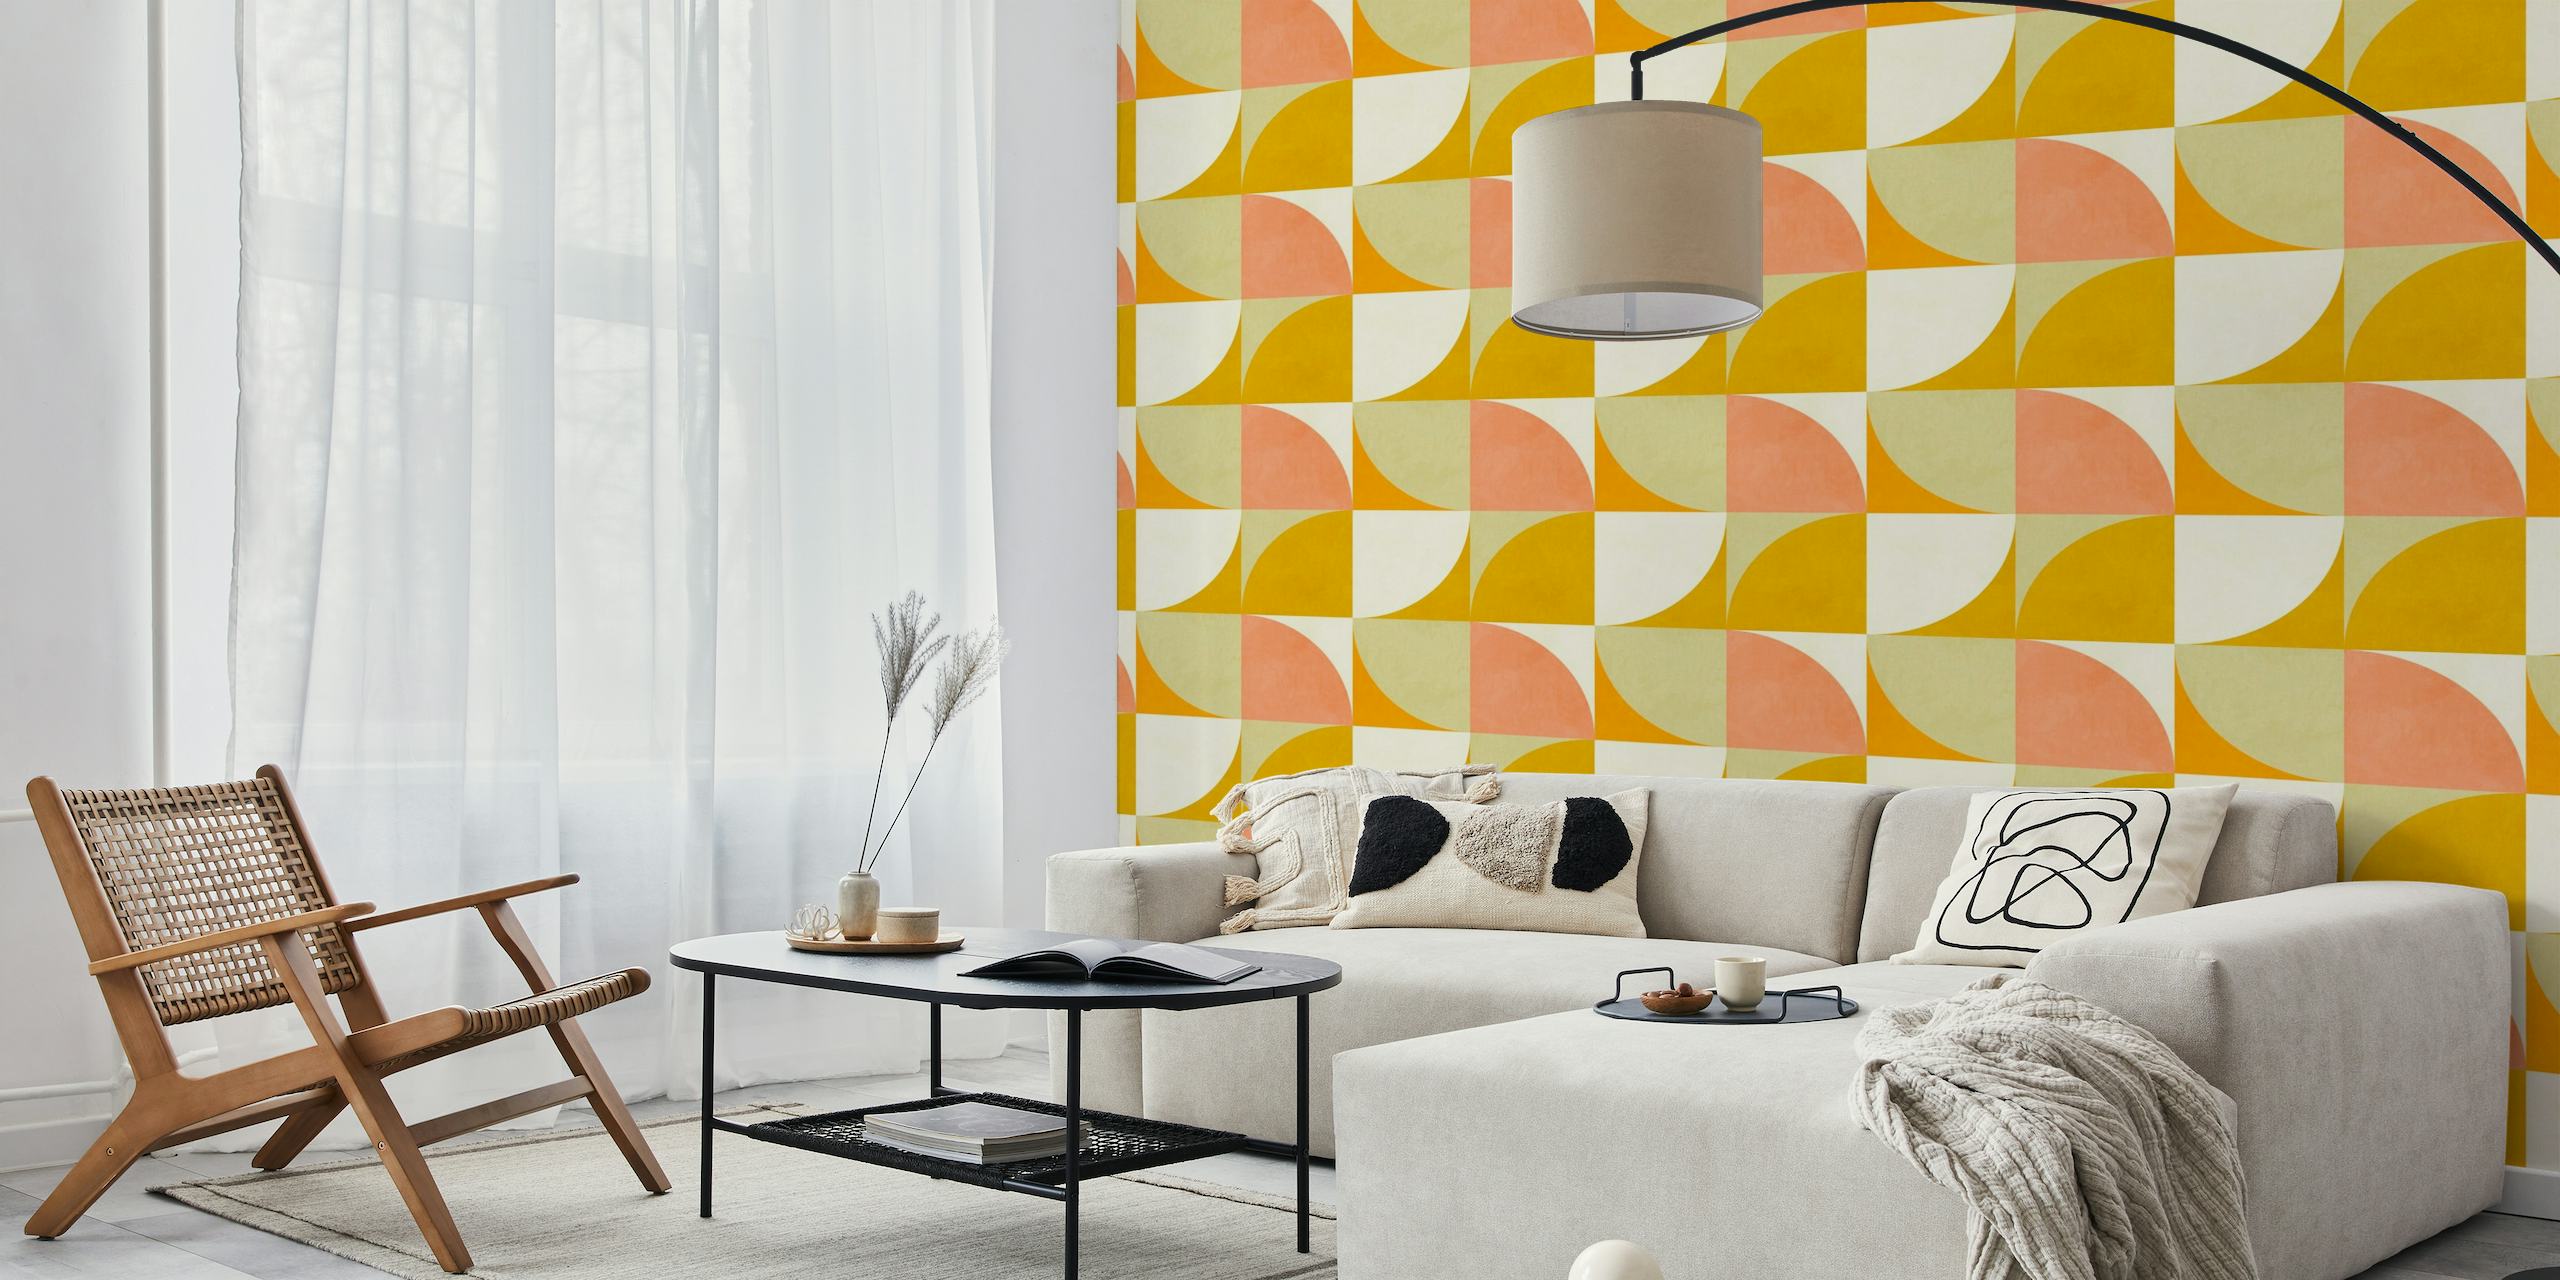 Bauhaus-inspiriertes Wandbild mit kräftigen geometrischen Formen in Rot-, Orange- und Gelbtönen